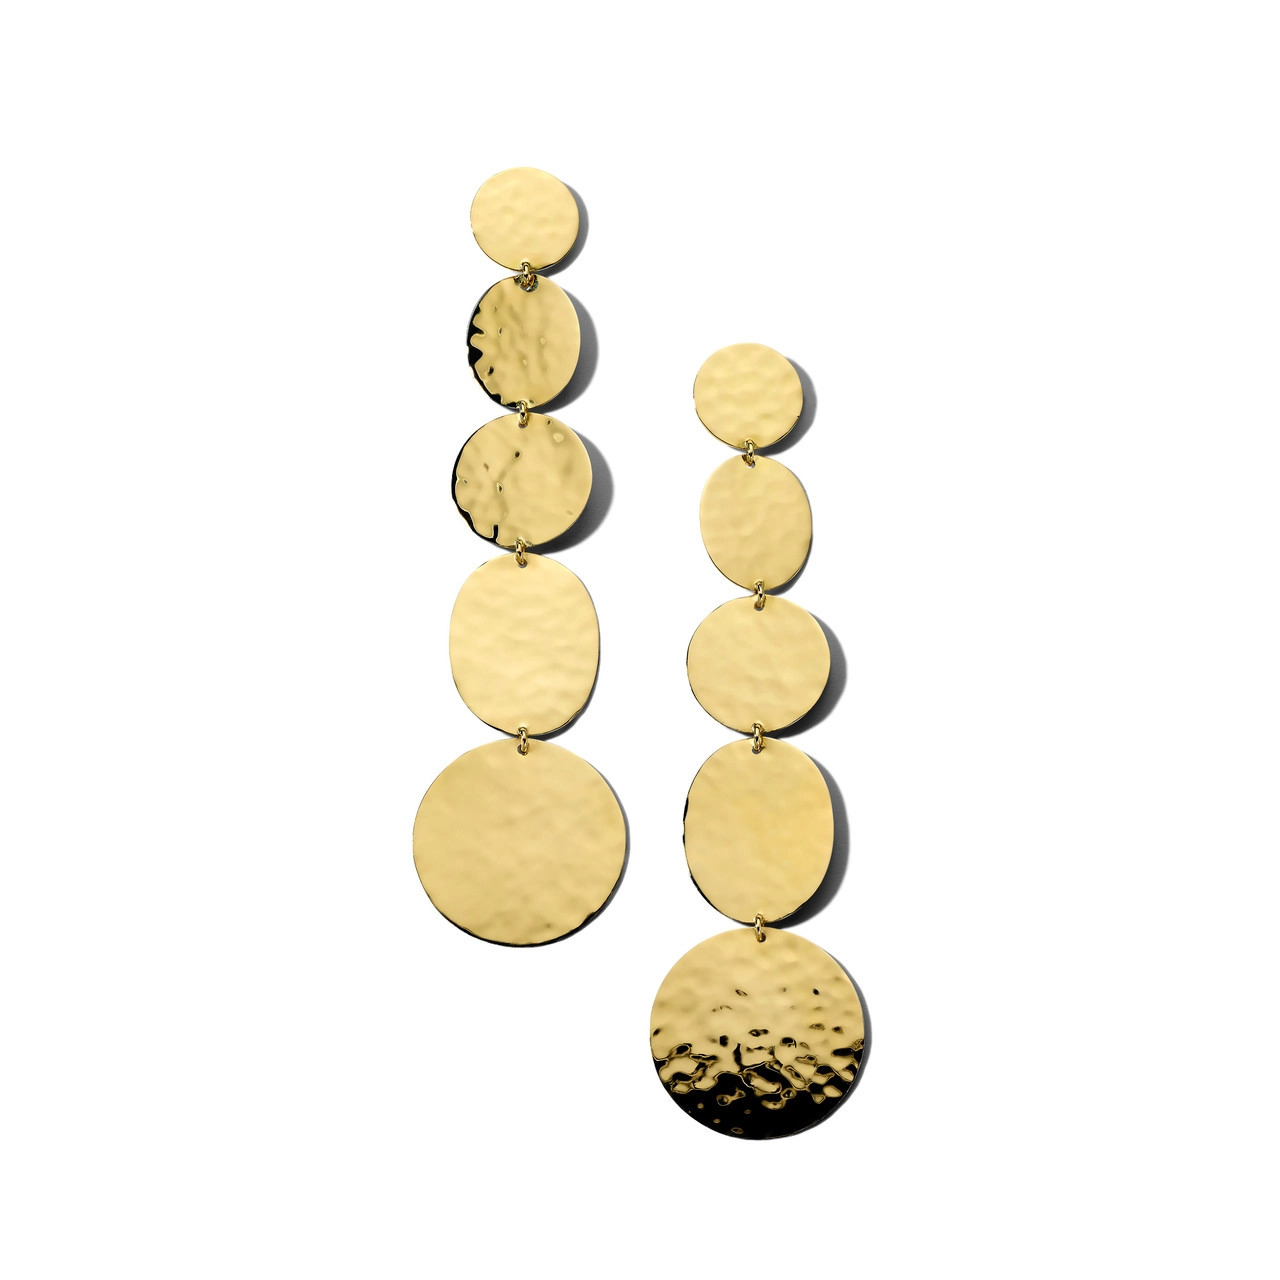 Ippolita 18k Classico 5-Tier Linear Crinkle Earrings 0